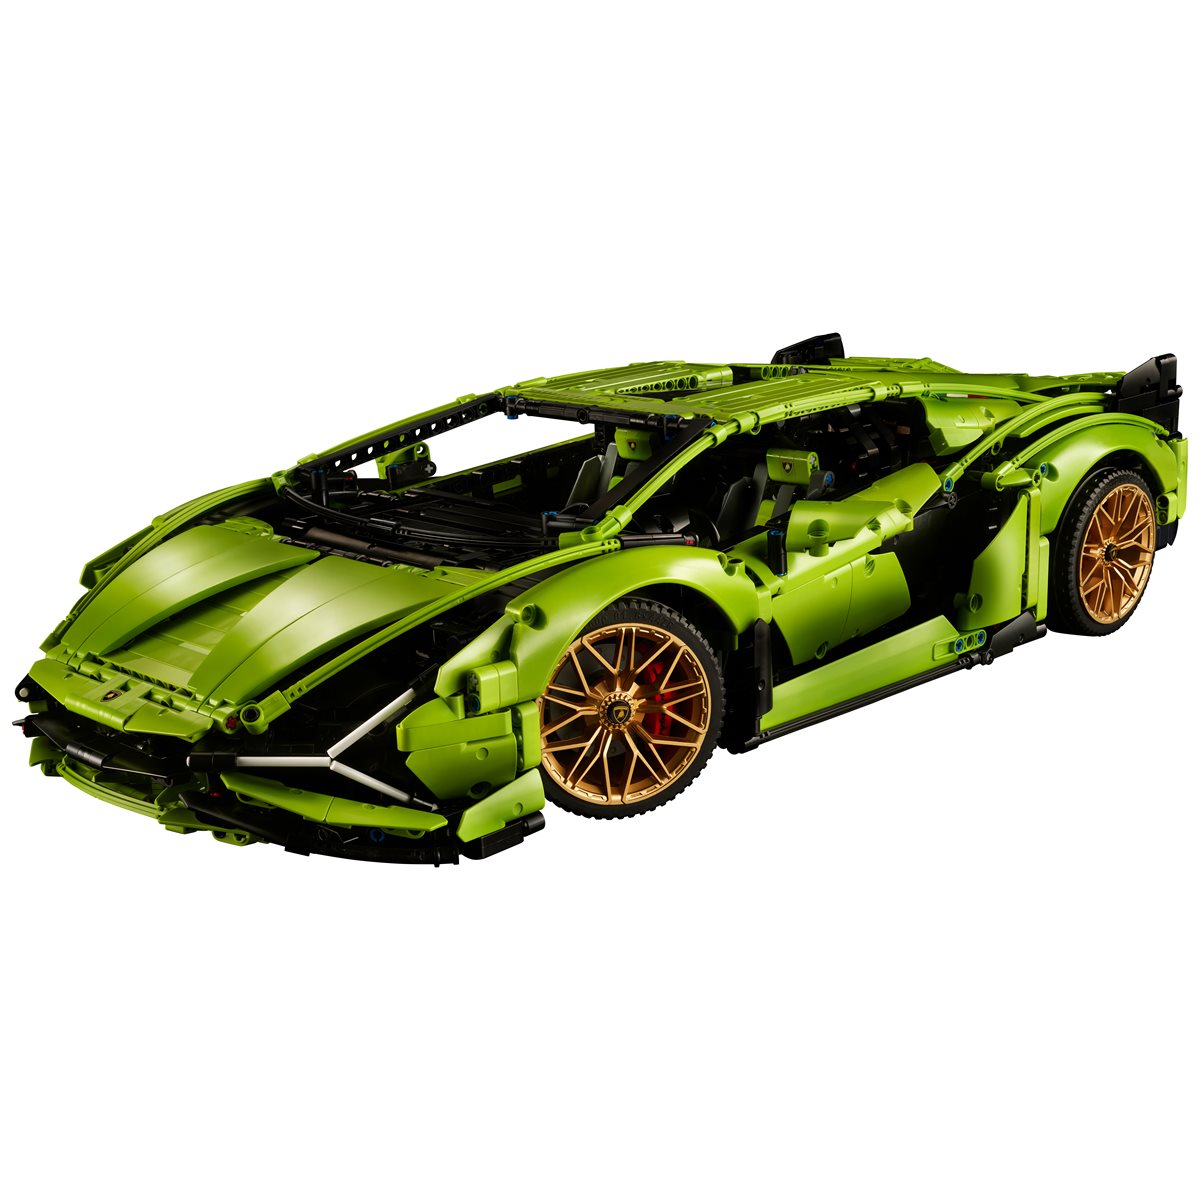 Lego Technic Lamborghini Sián Fkp 37 Car Model Set 42115 : Target